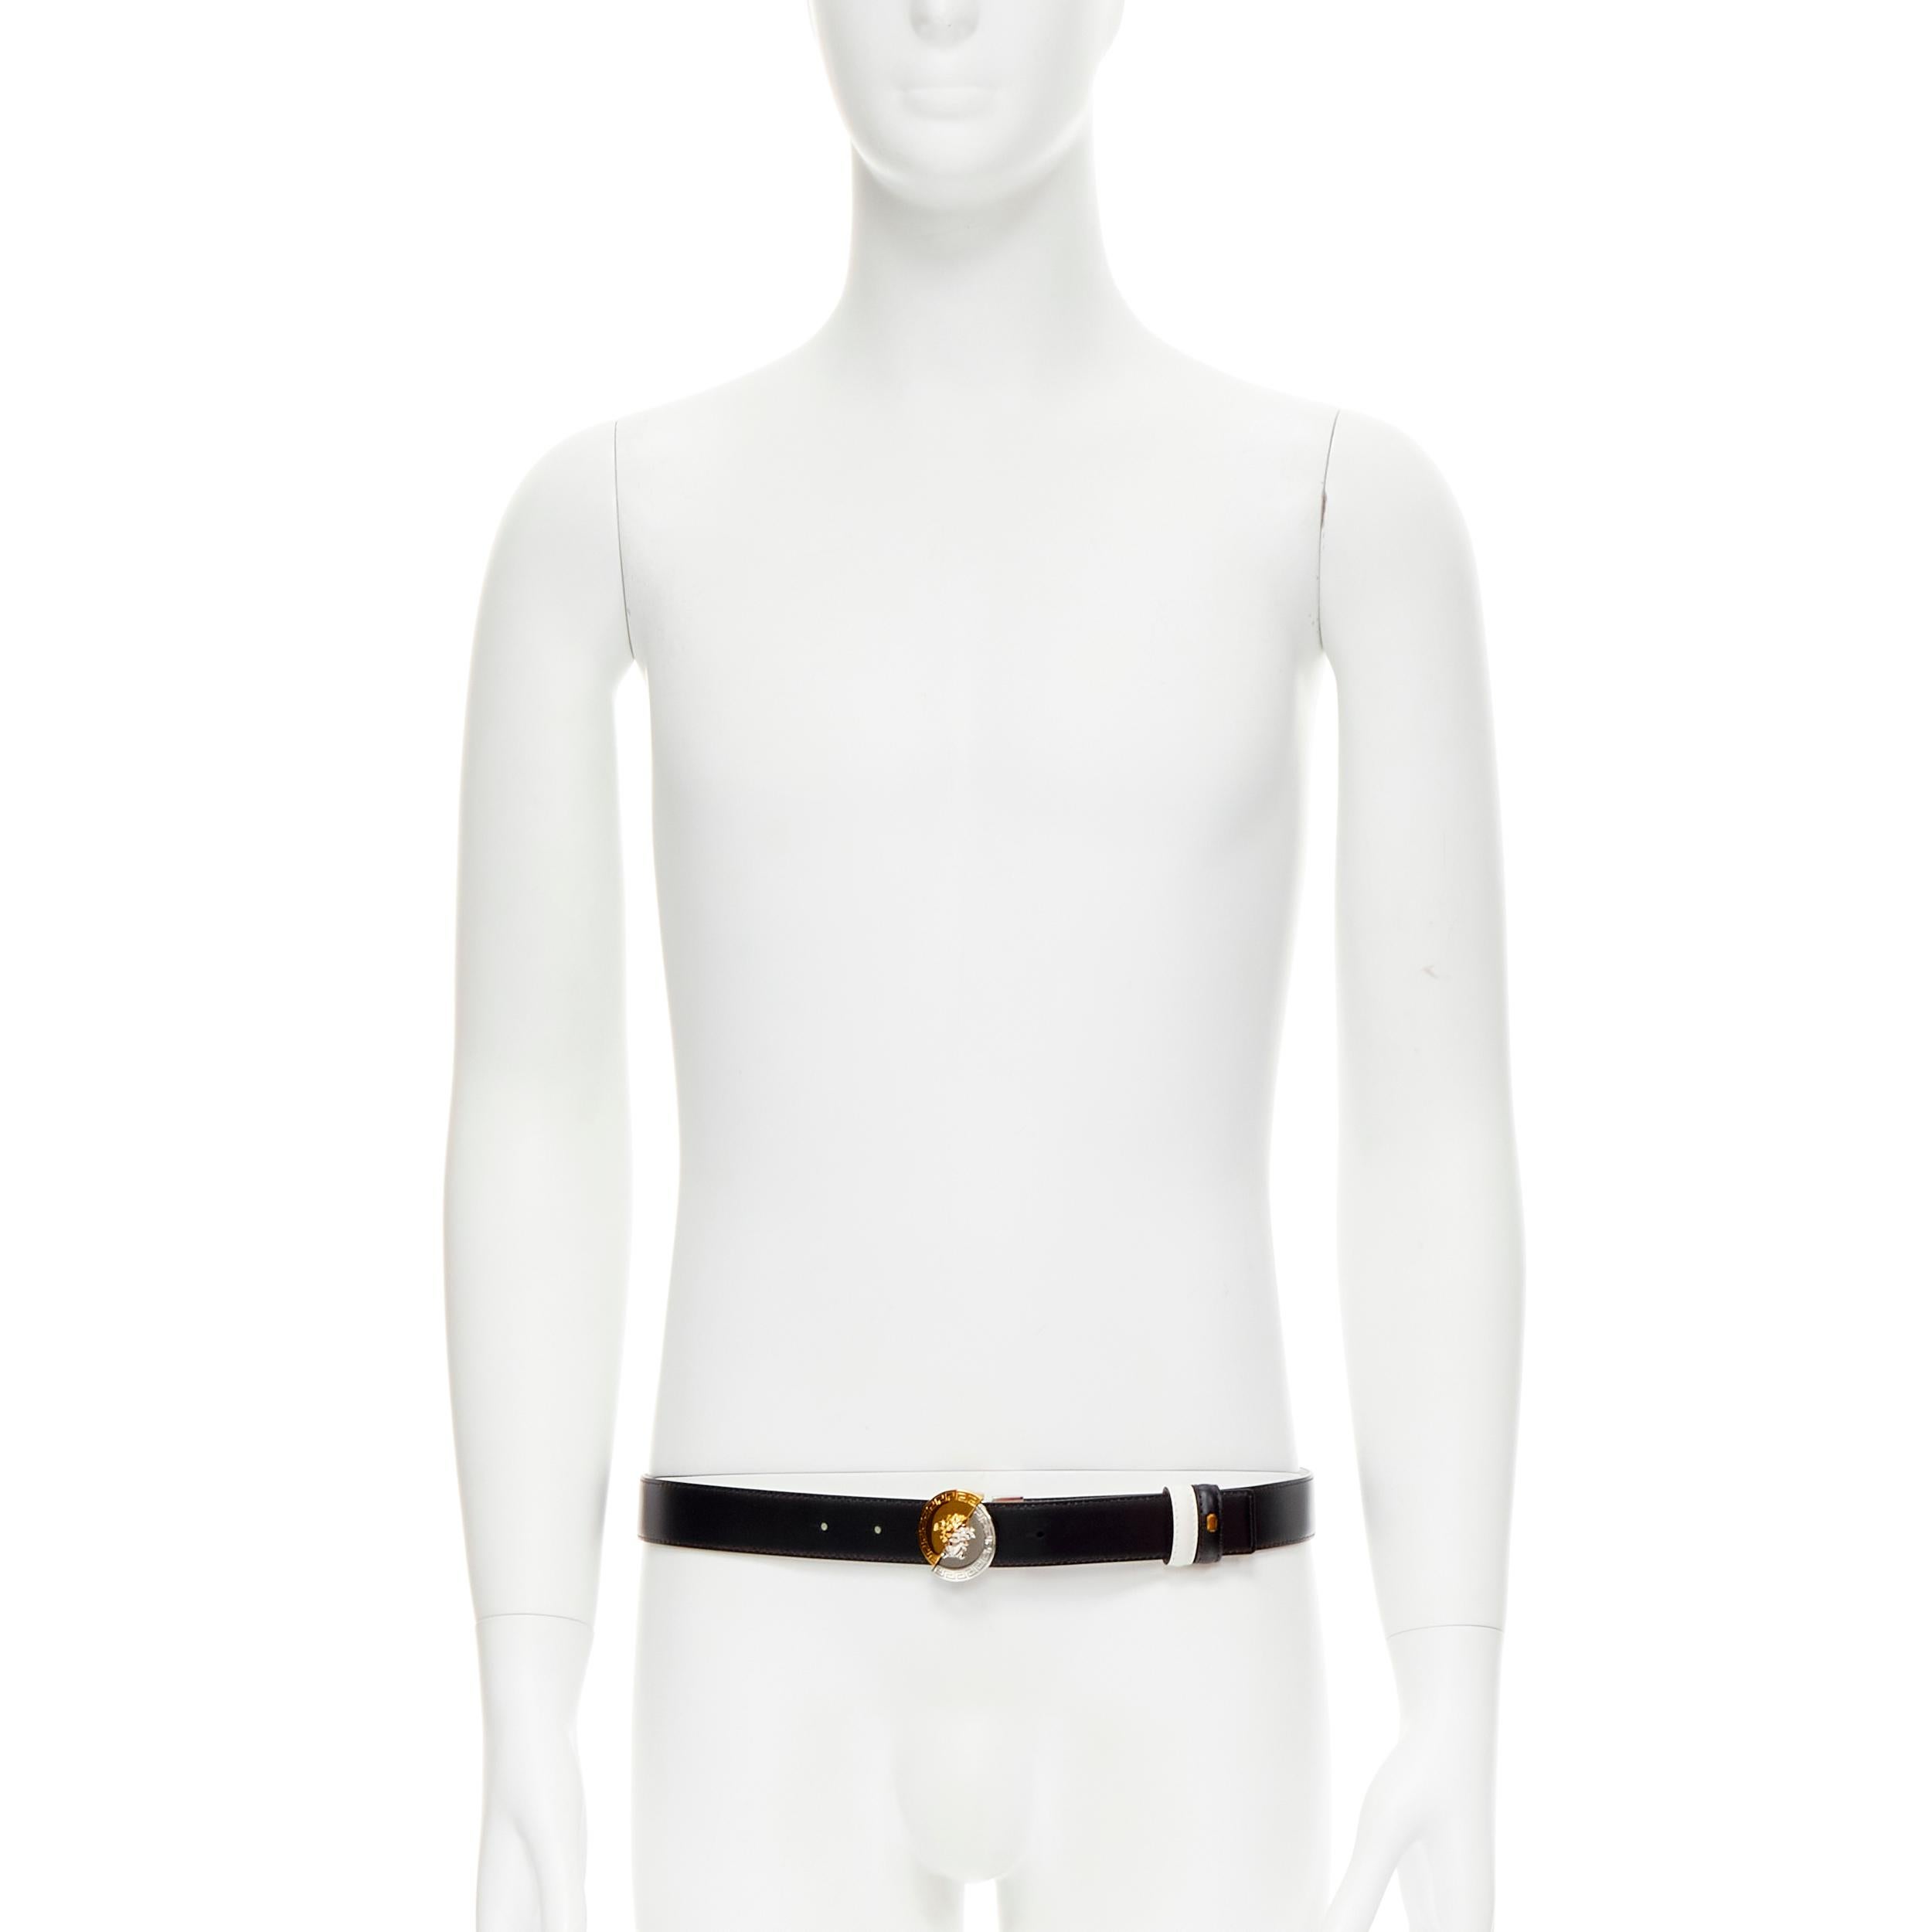 Versace, ceinture réversible Demi Medusa en métal mélangé noir et blanc, neuve  105cm 40-44